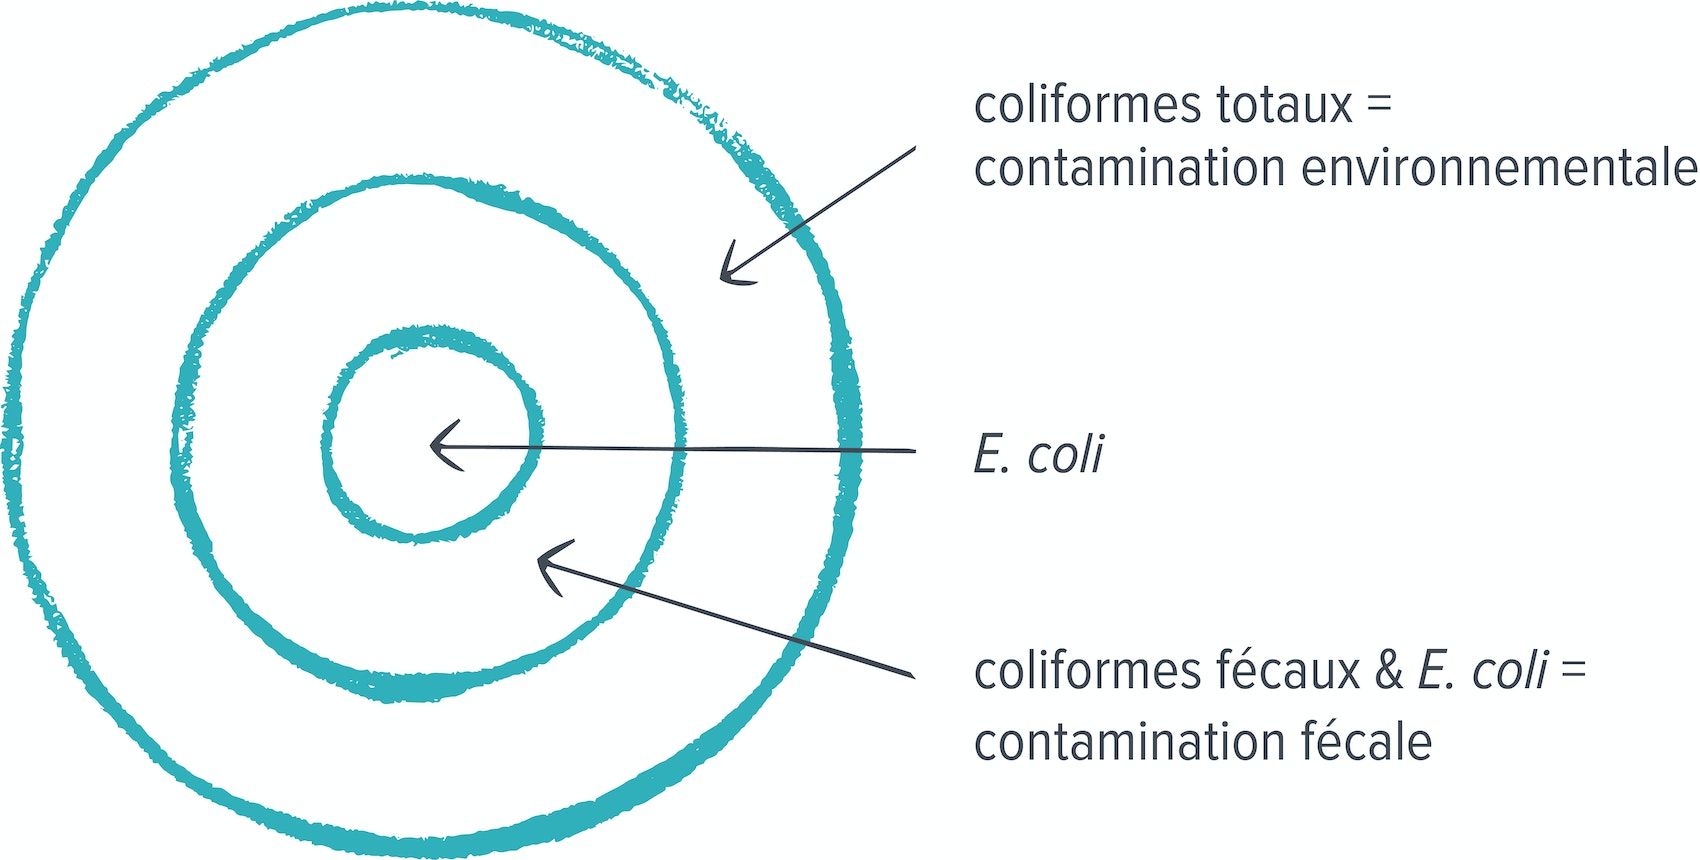 Un croquis turquoise en forme de cible montrant une flèche vers l'anneau extérieur avec l'étiquette "coliformes totaux = contamination environnementale". La deuxième étiquette "E. coli" pointe vers l'anneau central et la troisième étiquette pointe vers l'anneau du milieu avec l'étiquette "coliformes fécaux & E. coli = contamination fécale".